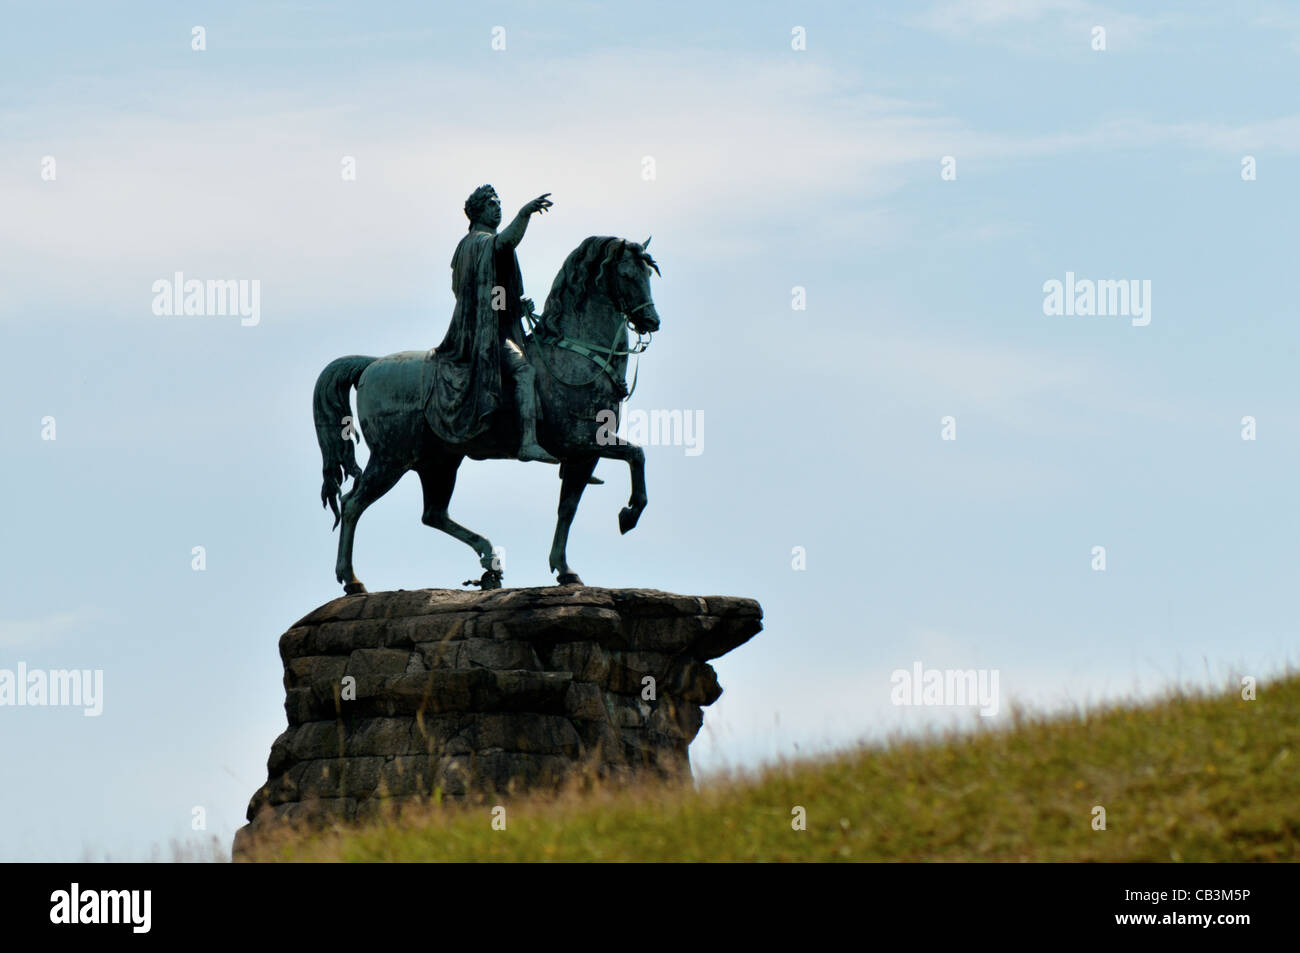 Statua di Re Giorgio III sul suo cavallo a Windsor Park - Londra, Regno Unito Foto Stock